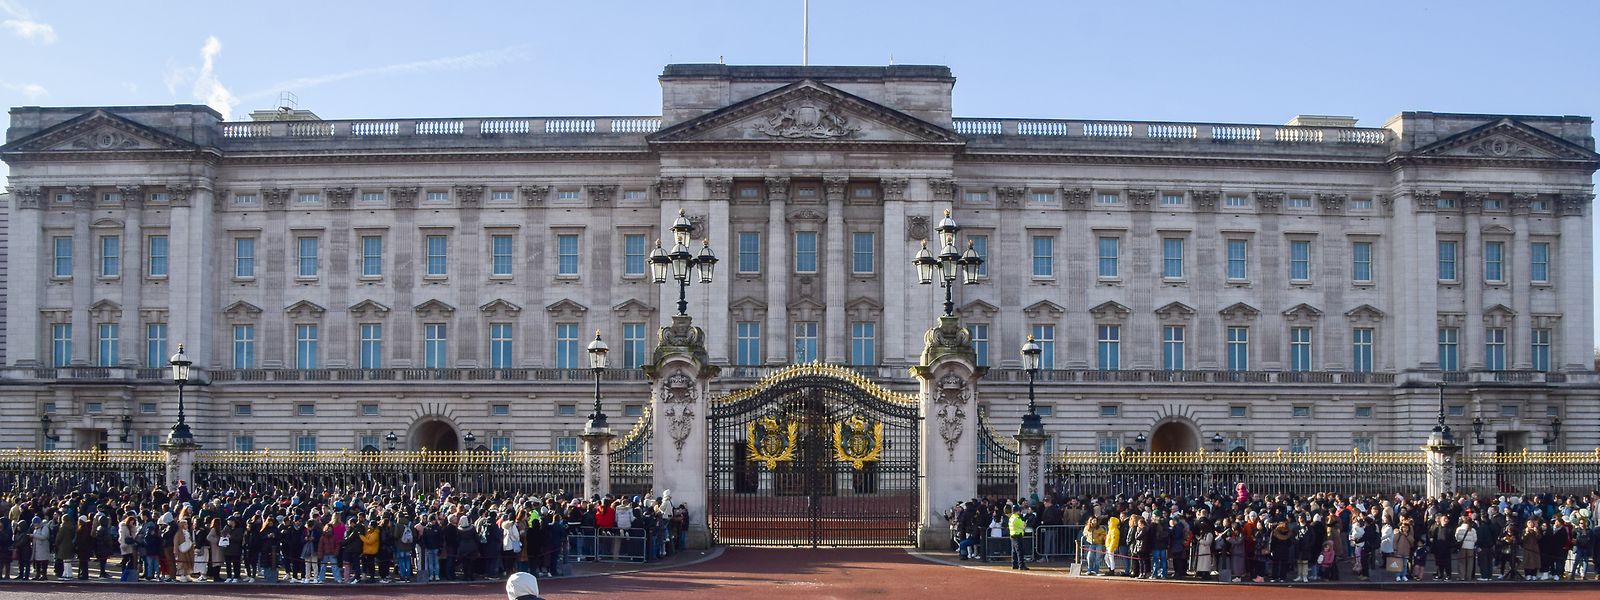 Nein, das sind noch keine Bewerber: Diese Aufnahme zeigt eine große Menschenmenge vor dem Buckingham-Palast, die die Wachablösung live erleben wollen.